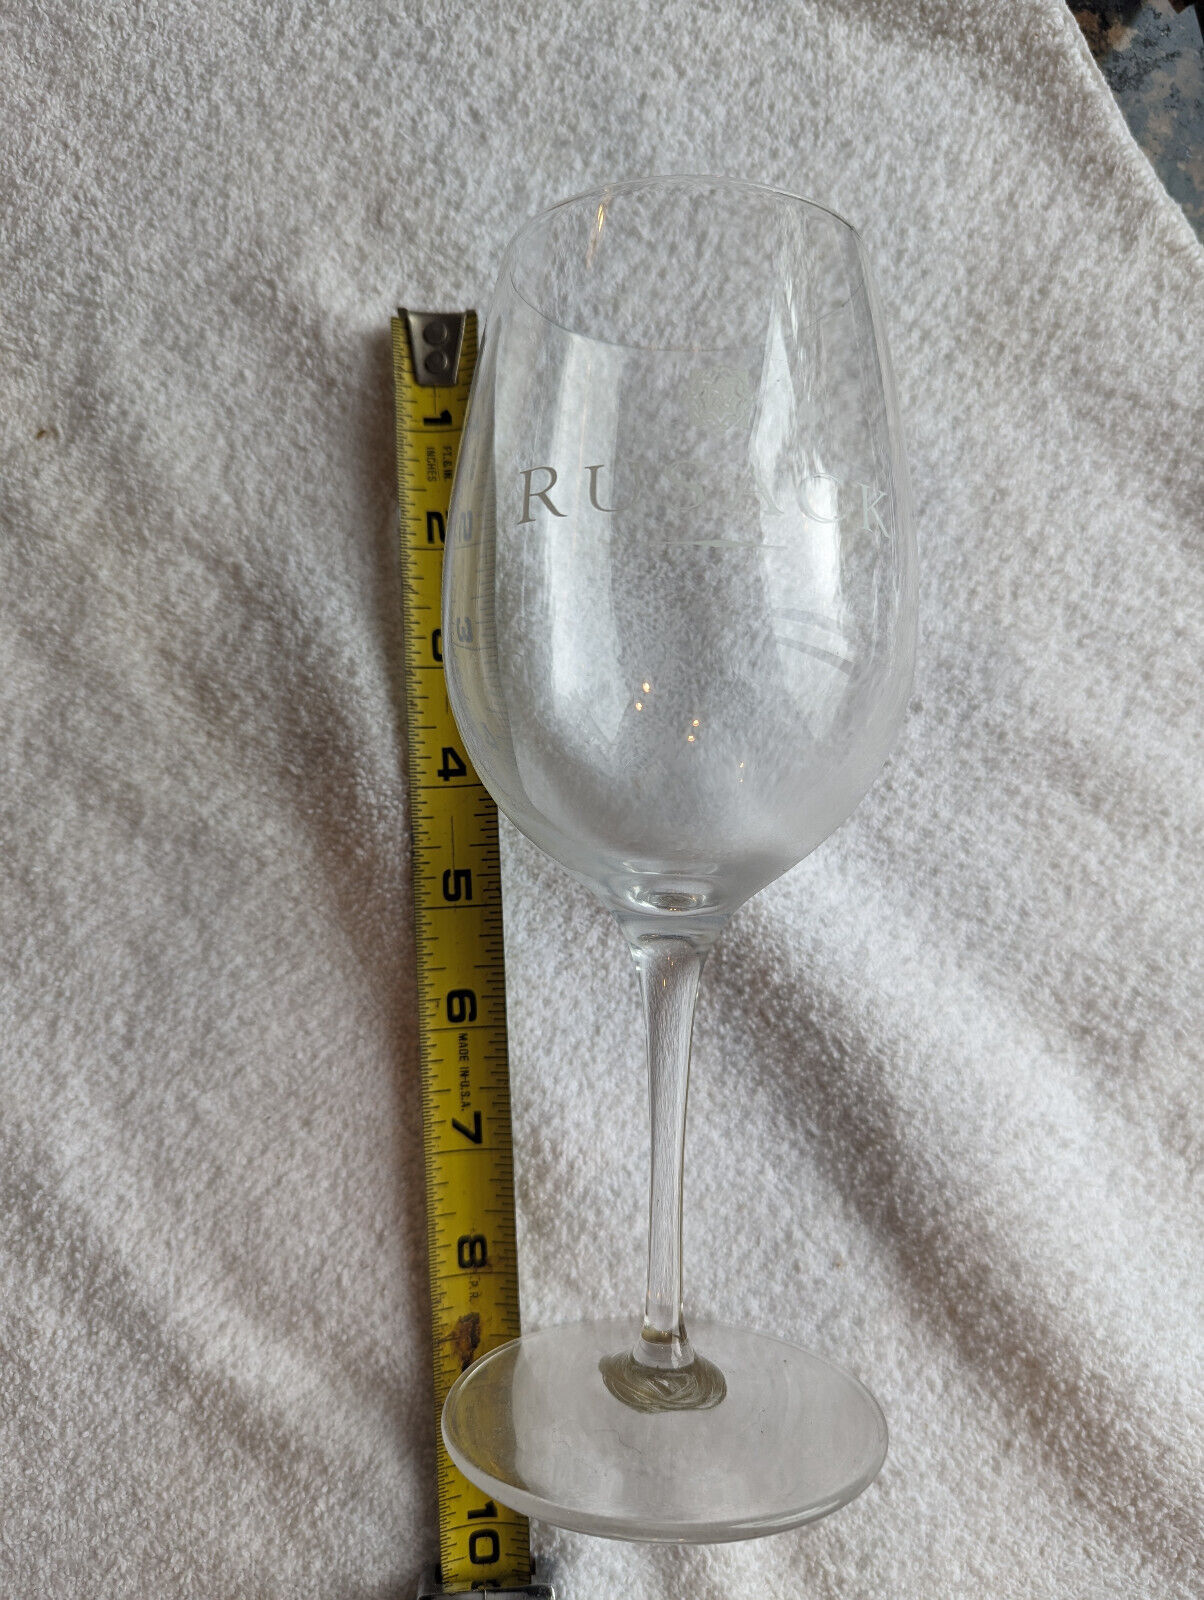 rusack VINEYARD WINERY WINE TASTING GLASS STEMWARE solvang ca etched art 92011